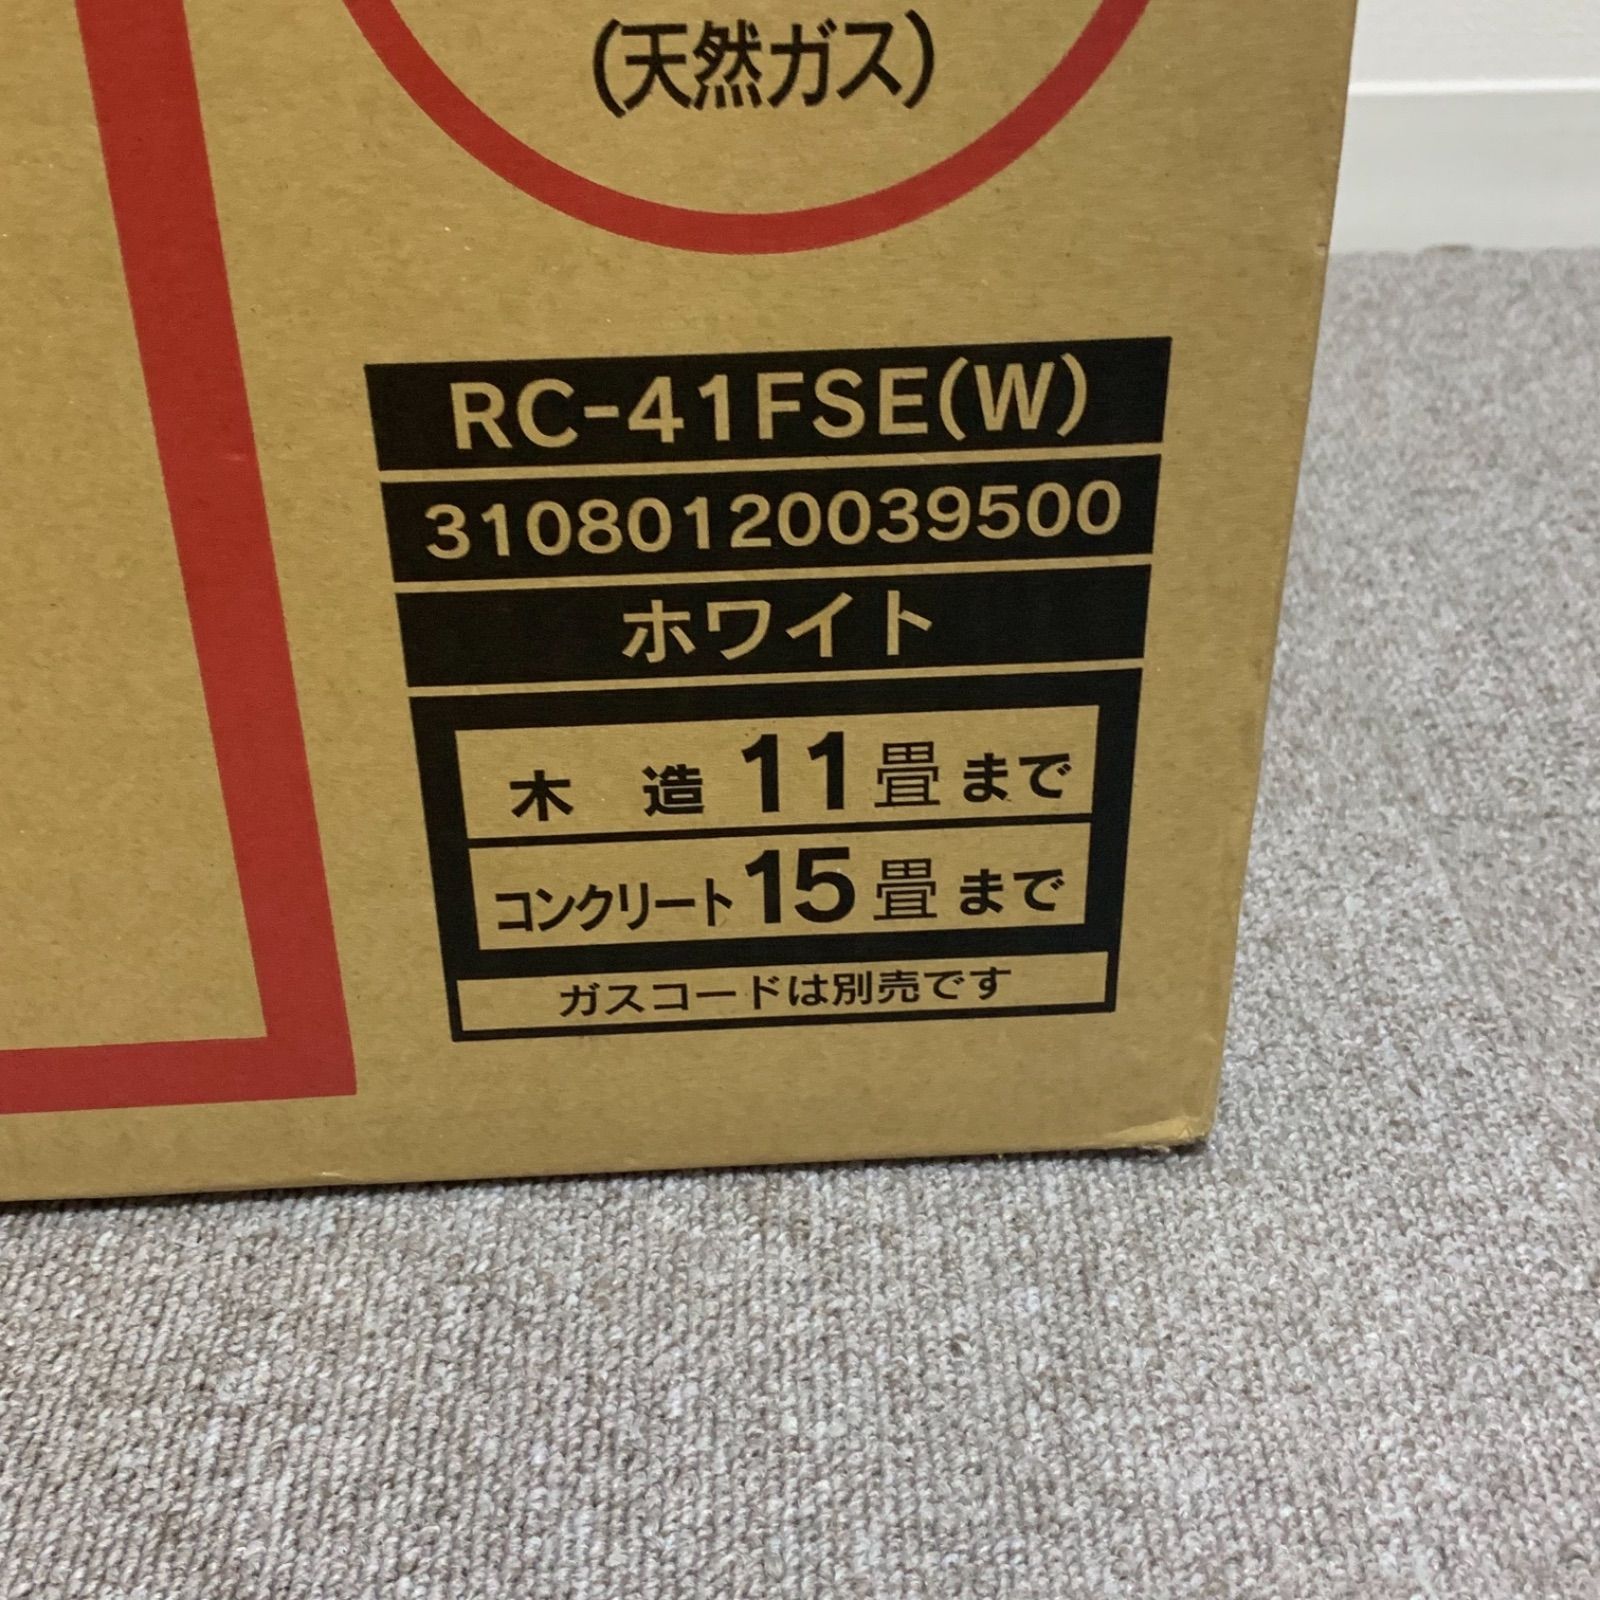 東邦ガス RC-41FSE(W) WHITE 業界No.1 - ファンヒーター